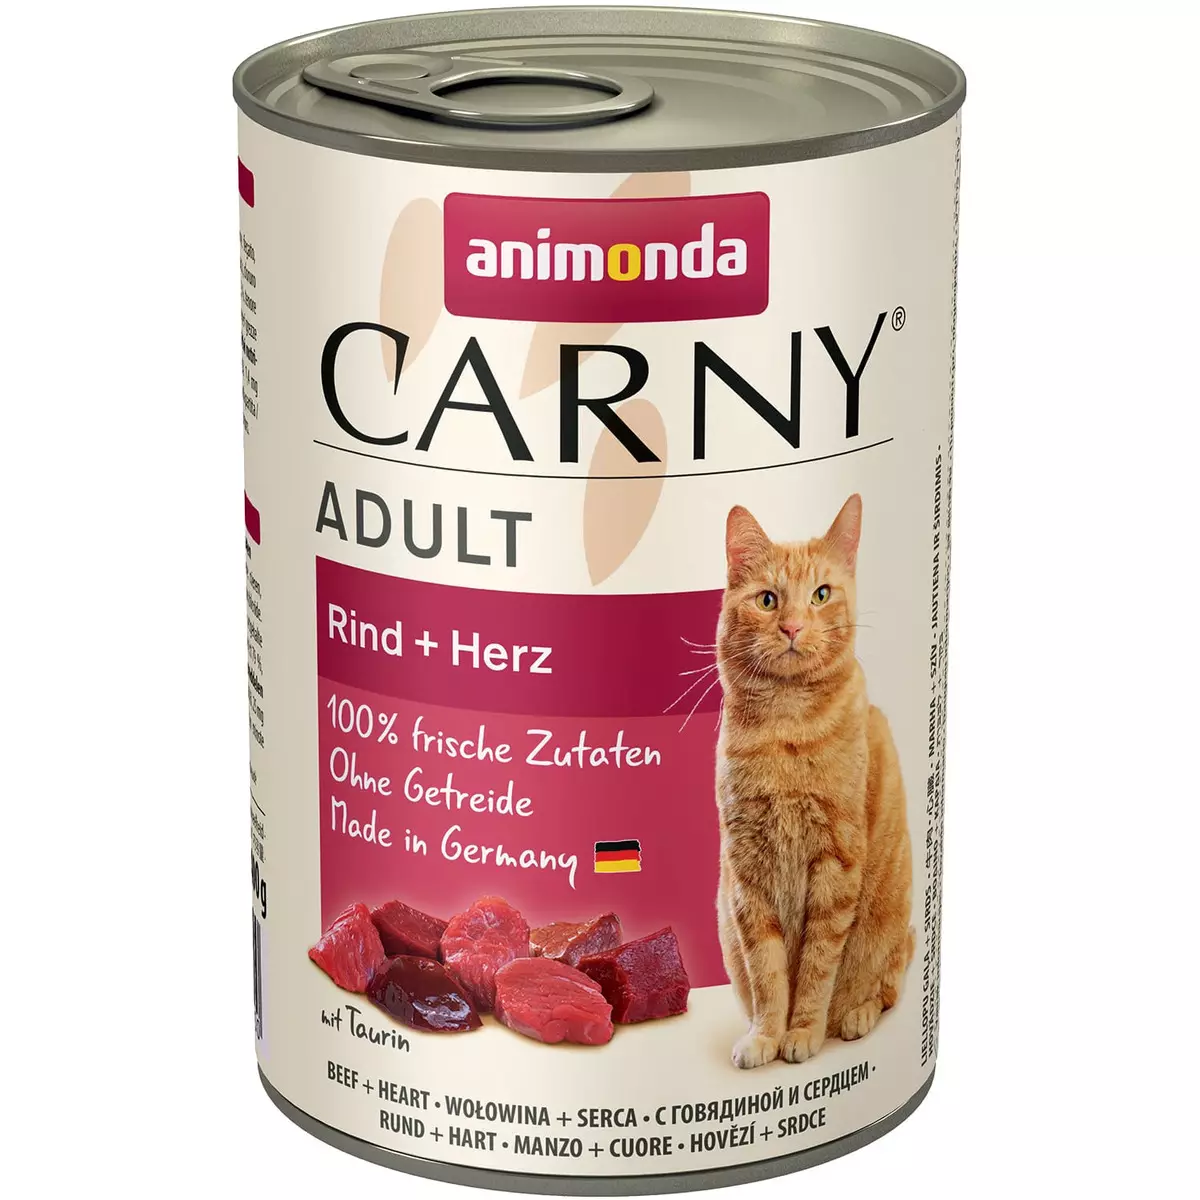 Animonda飼料：貓狗，乾濕，貓罐頭食品成年貓和小貓，組成和評論 22112_15